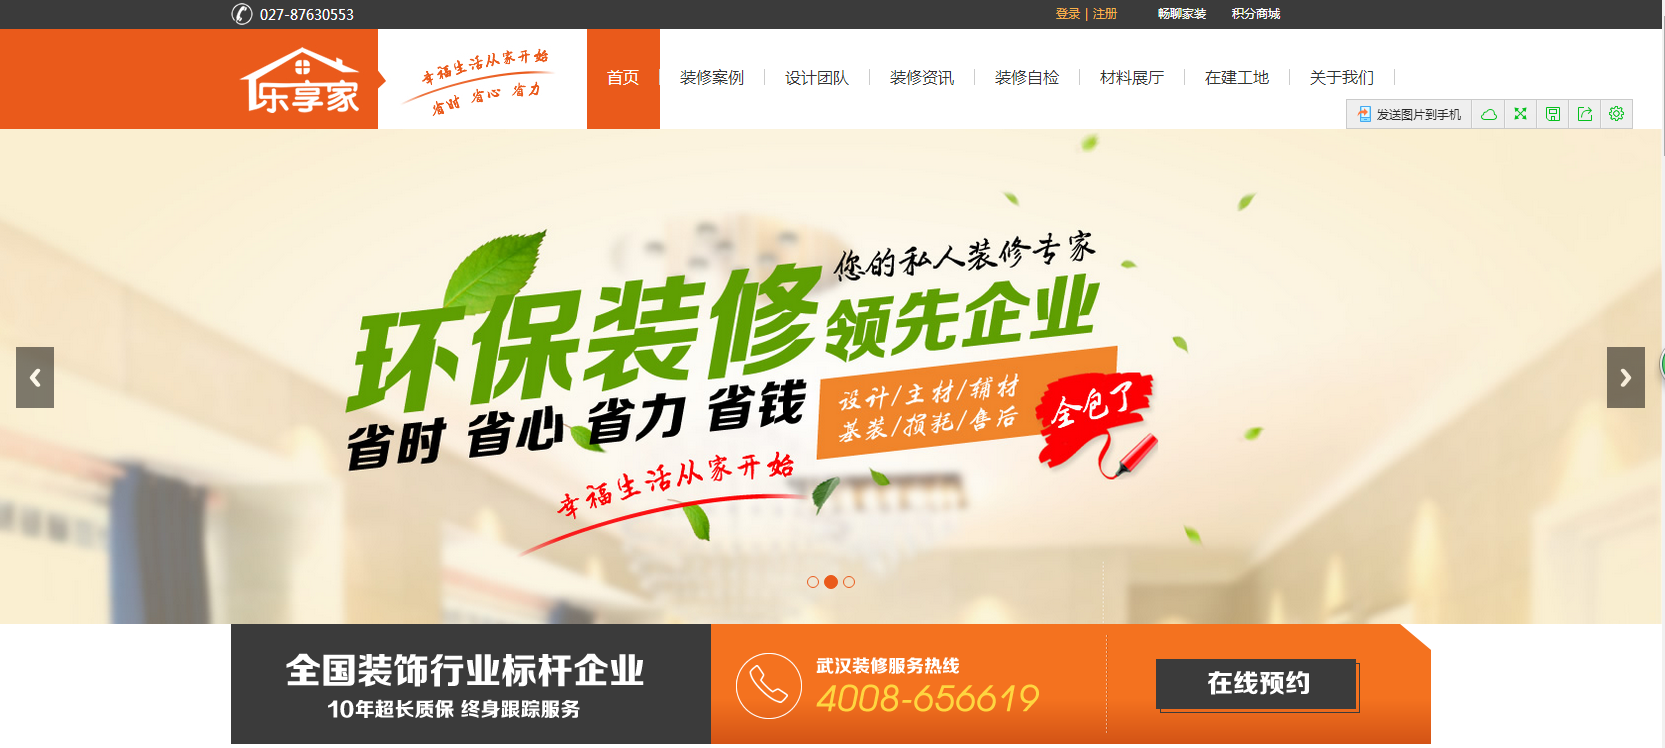 恭祝湖北乐享家装饰工程有限公司网站正式上线了